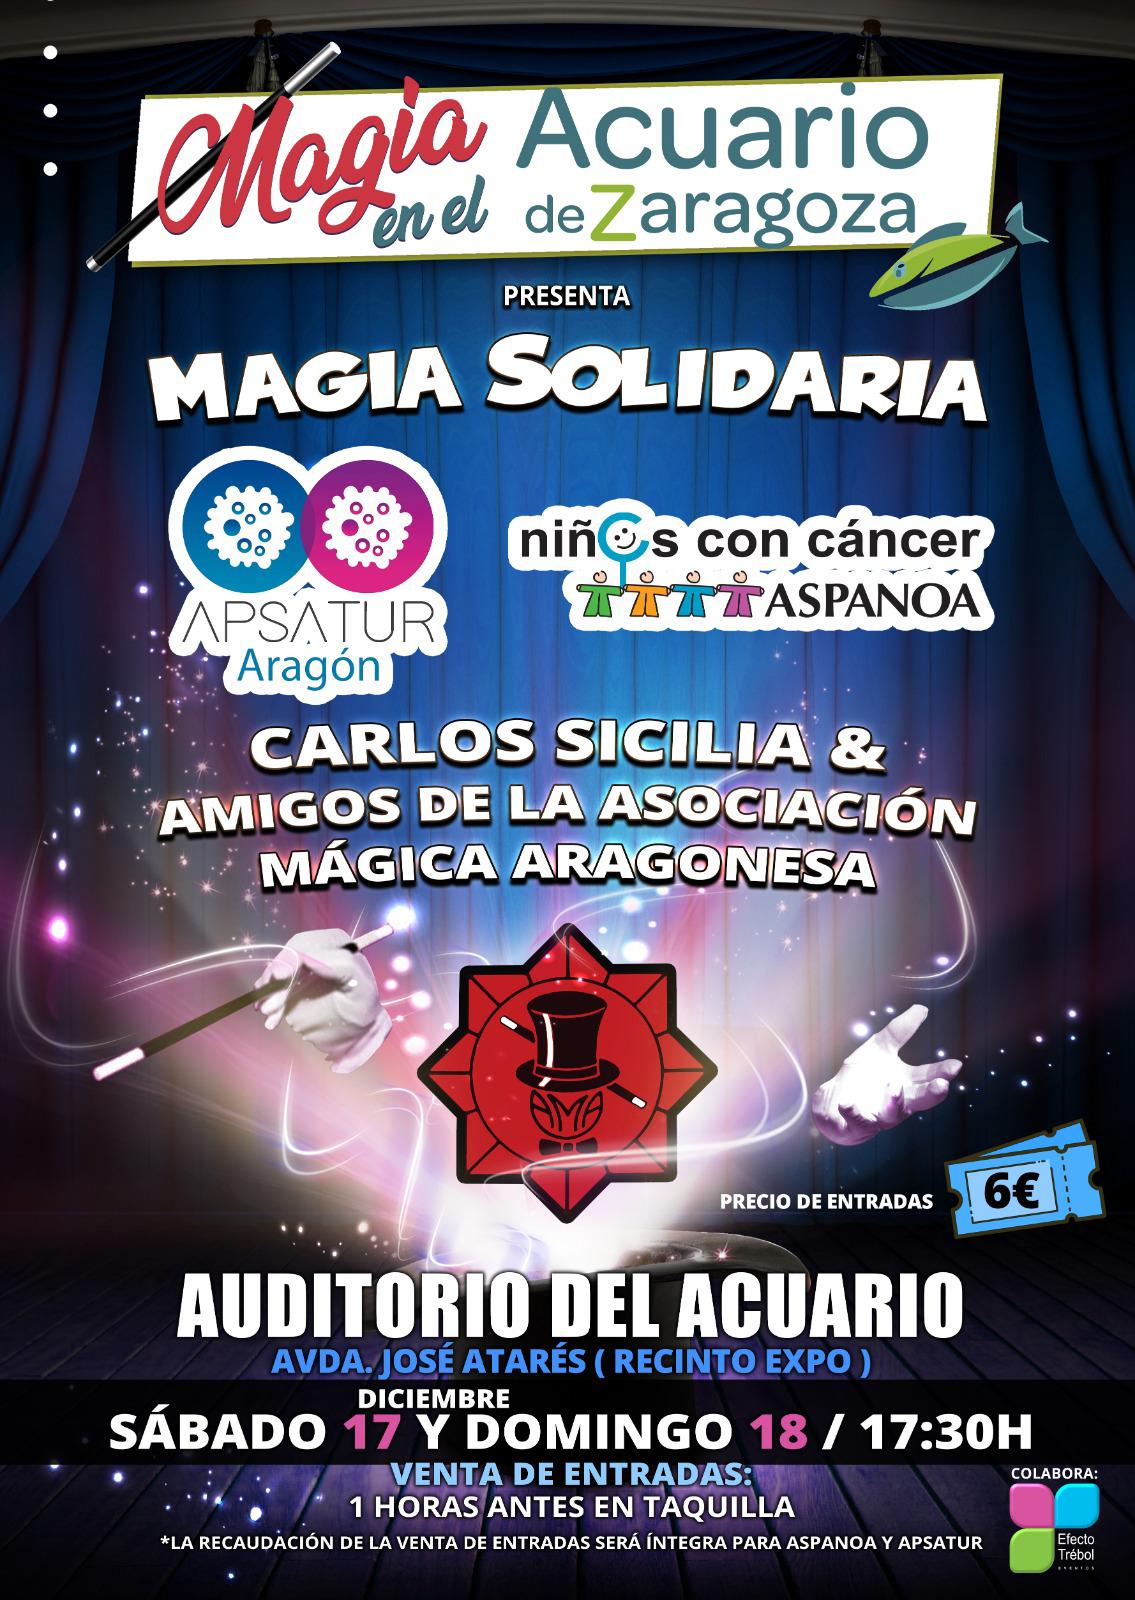 Magia Solidaria 17 y 18 de diciembre Acuario de Zaragoza